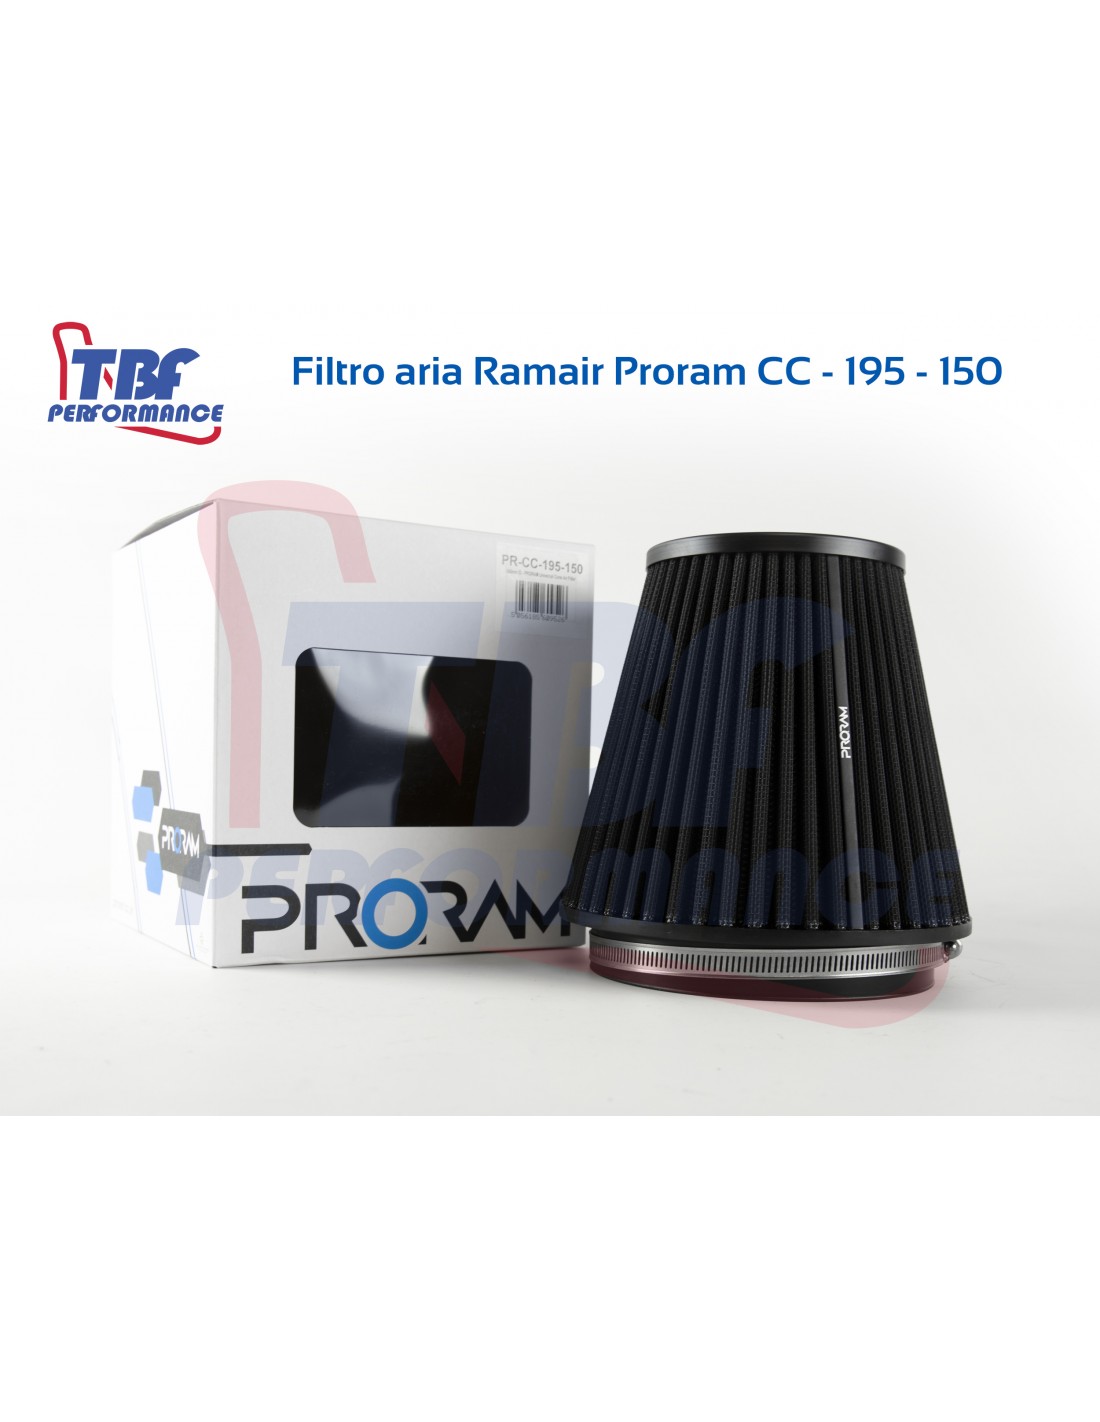 Ramair Filters PR-CC-150-76 colore: nero Filtro dellaria conico multiuso taglia unica 